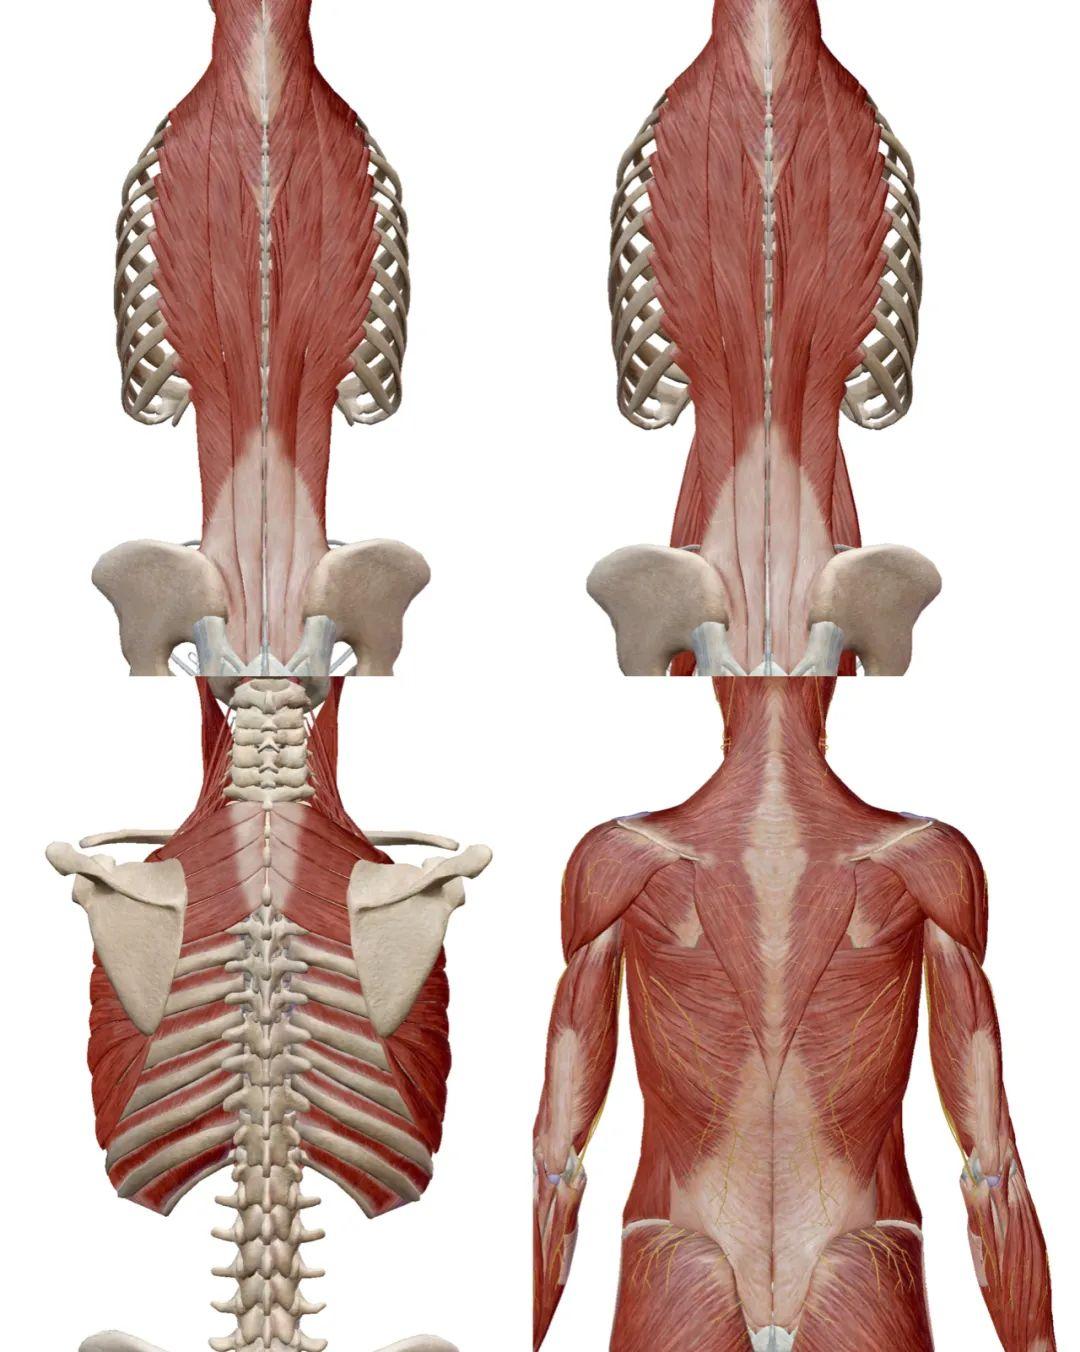 从最内侧连接脊柱两两椎体的椎旁肌群,然后是跨越多段脊柱的竖脊肌群